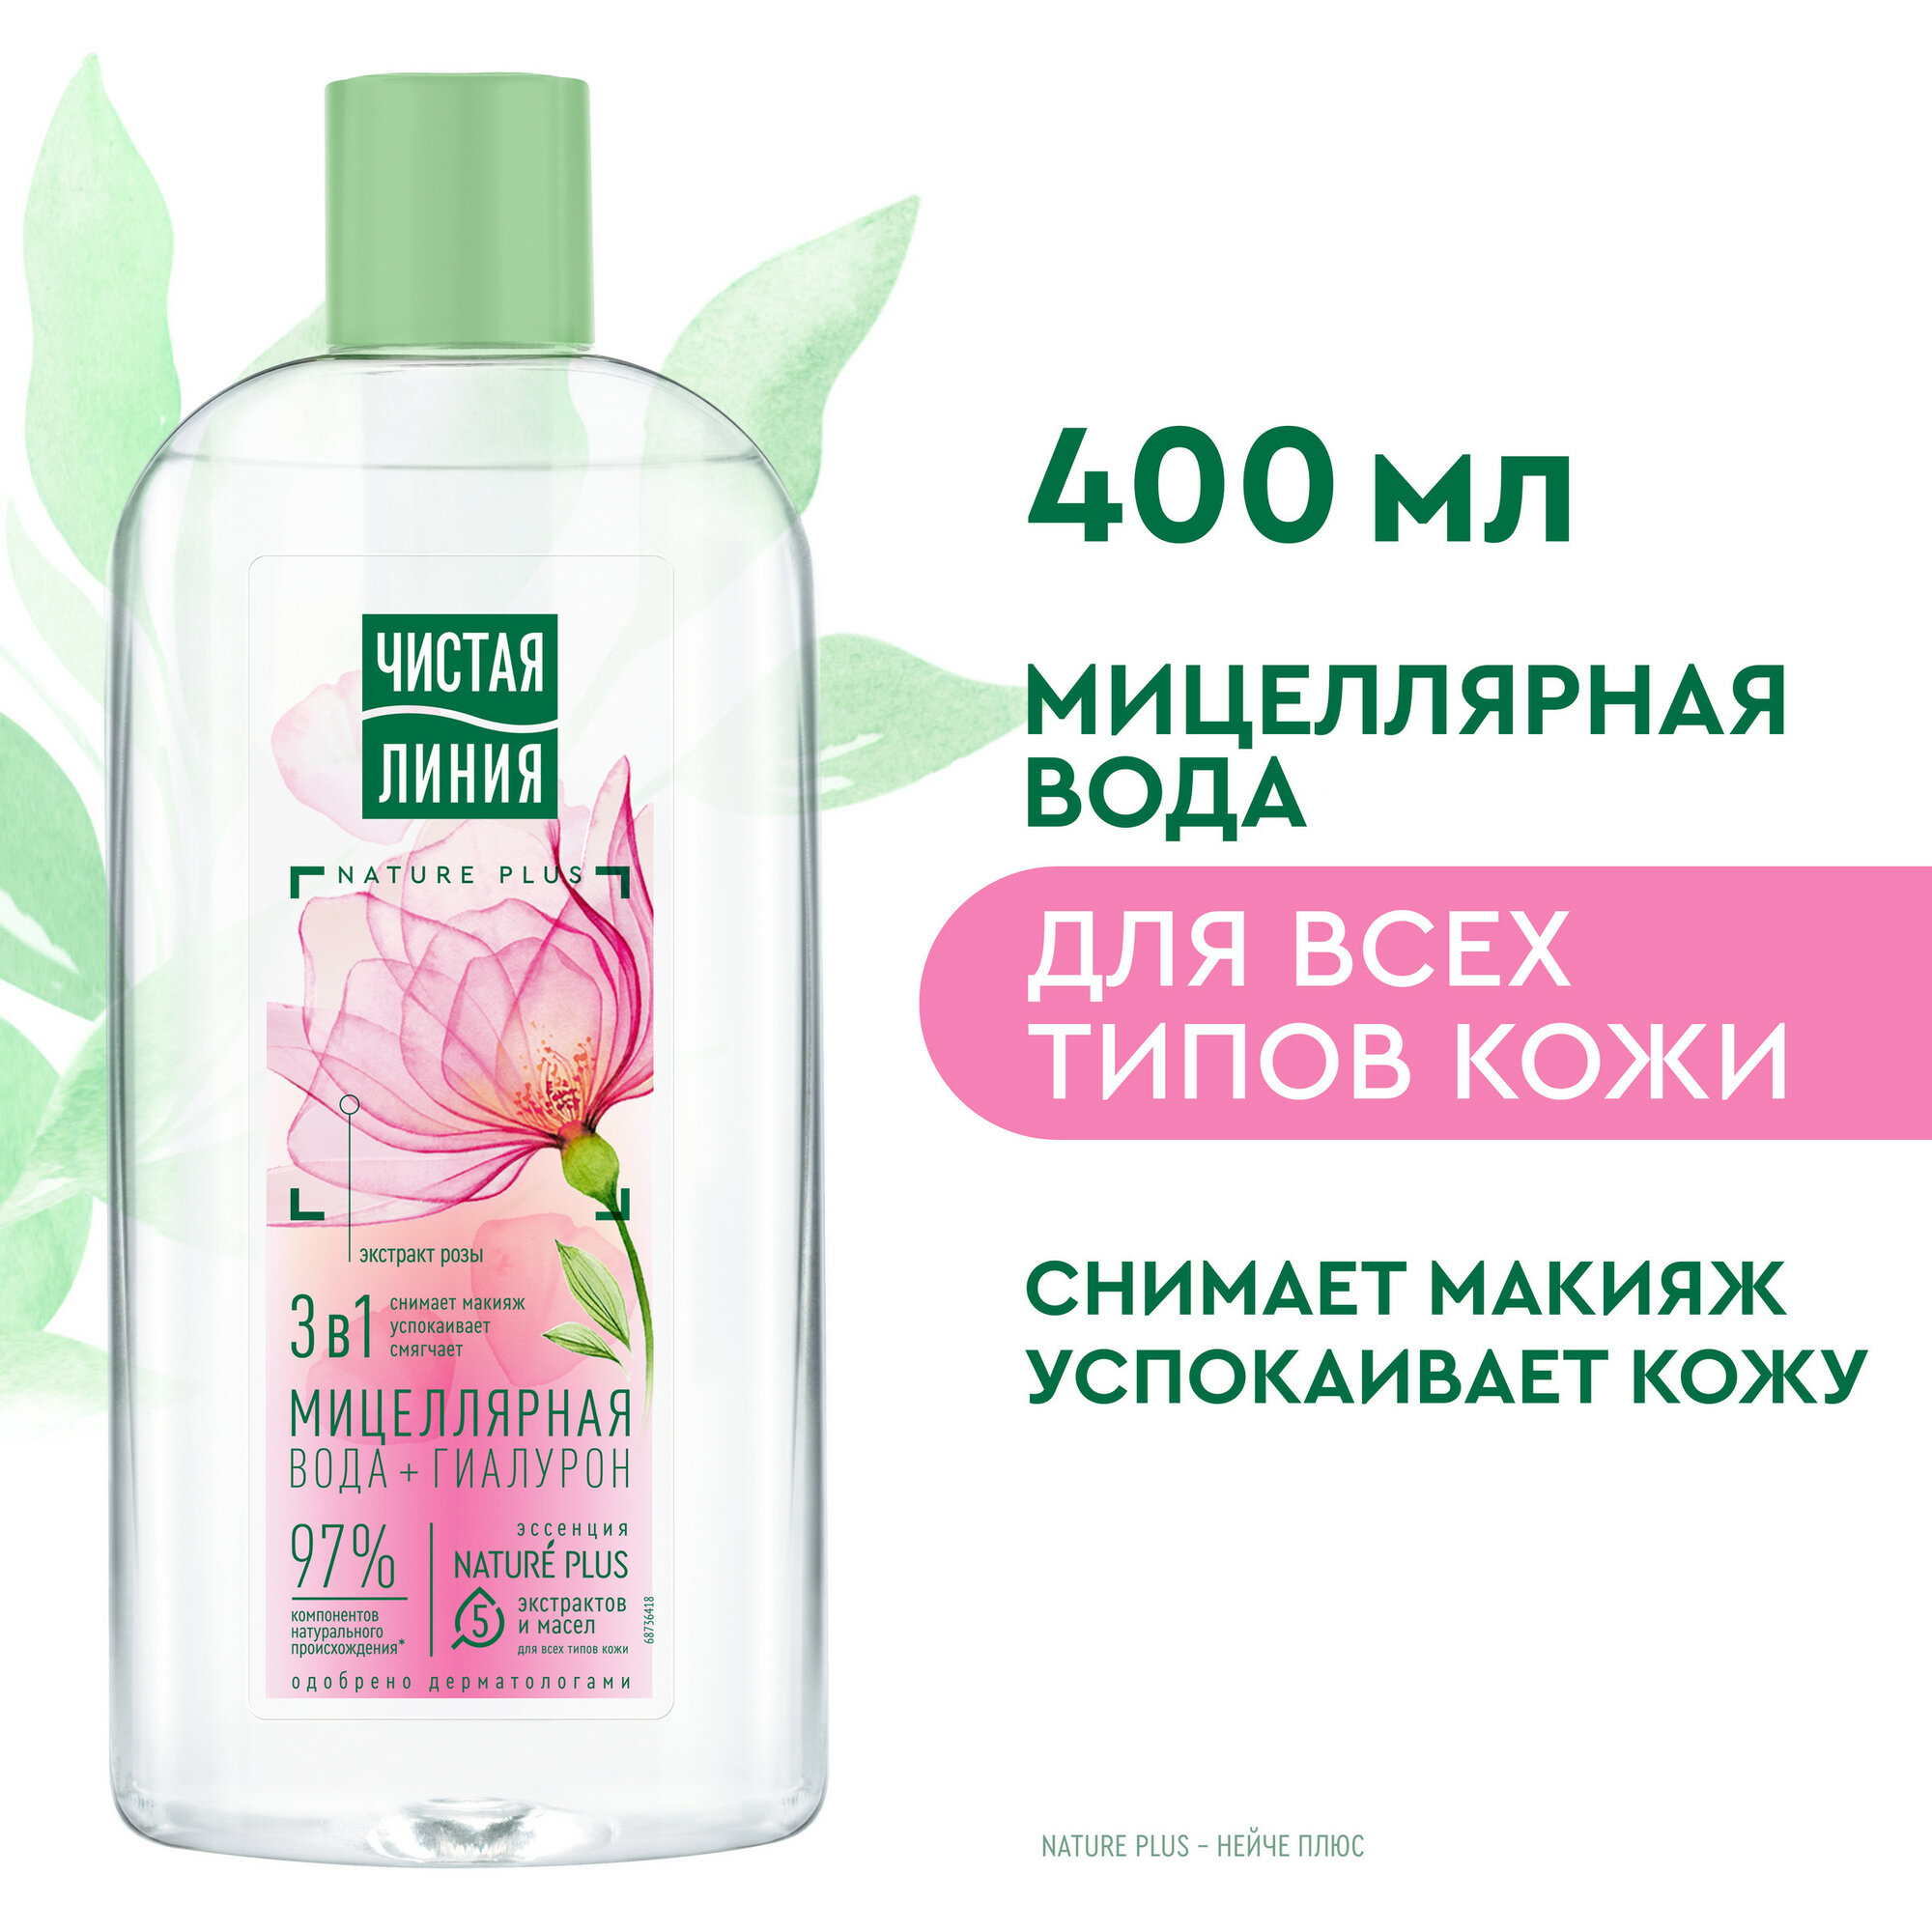 Чистая Линия мицеллярная вода 3в1 для всех типов кожи с гиалуроном и экстрактом розы успокаивает кожу 100 мл